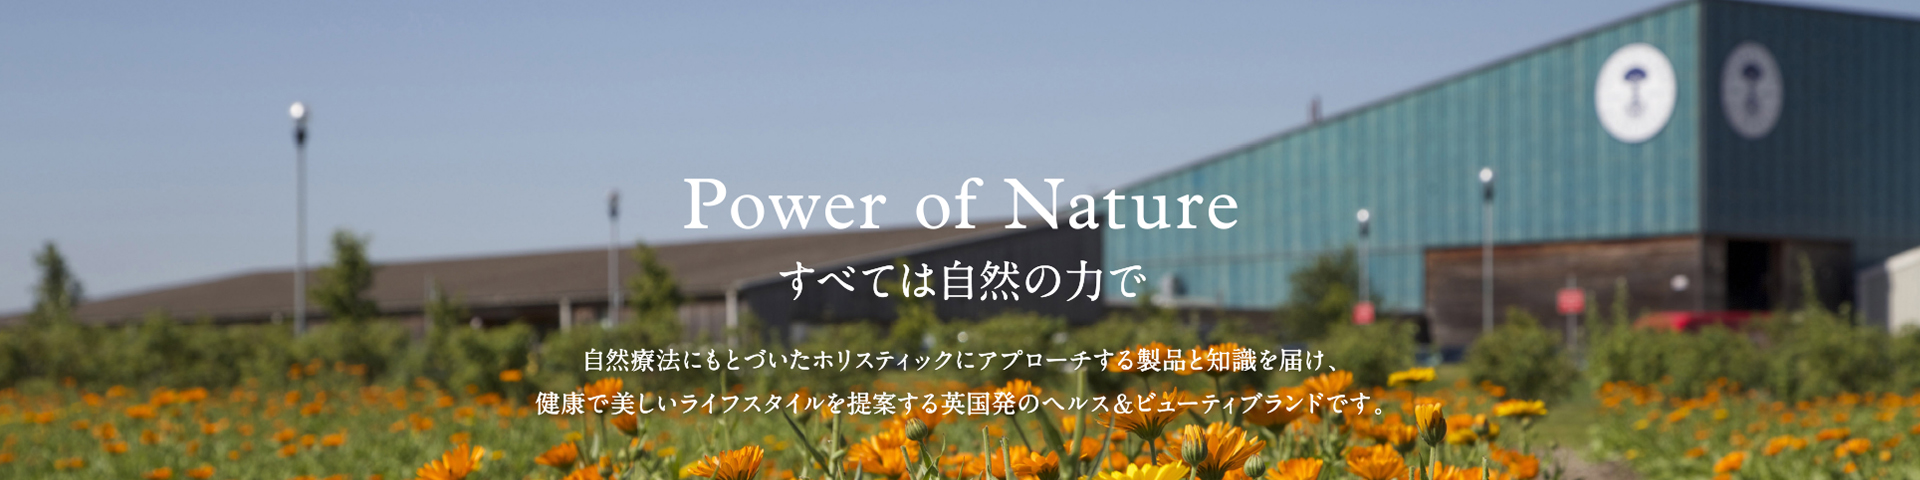 Power of Nature すべては自然の力で